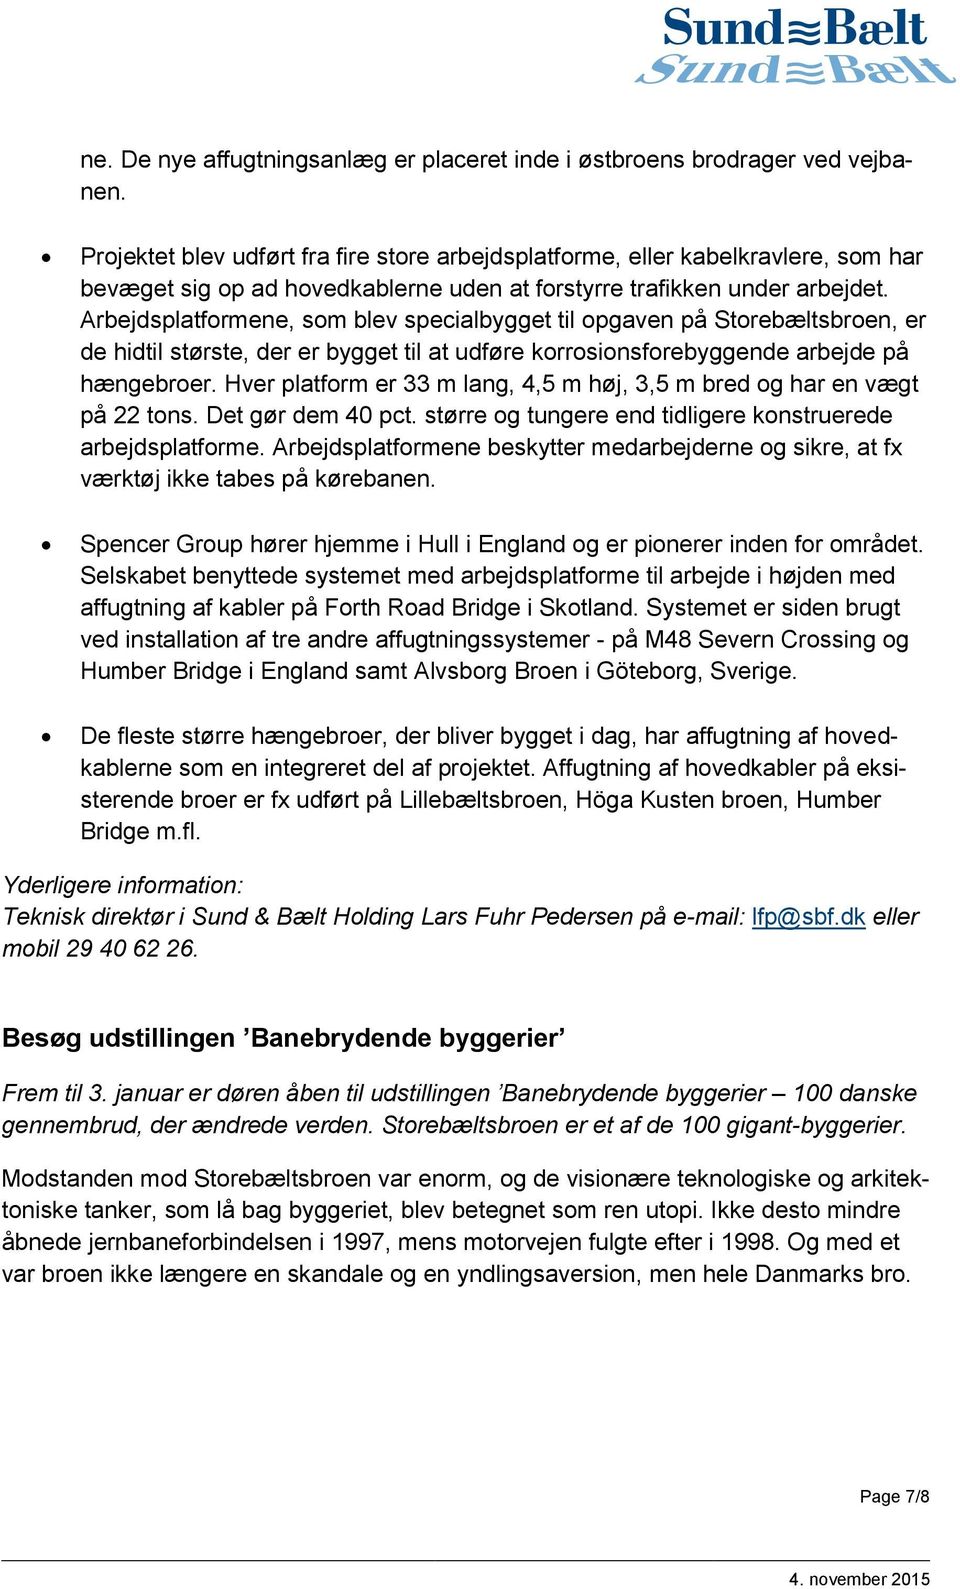 Nyhedsbrev fra Sund & Bælt - PDF Free Download